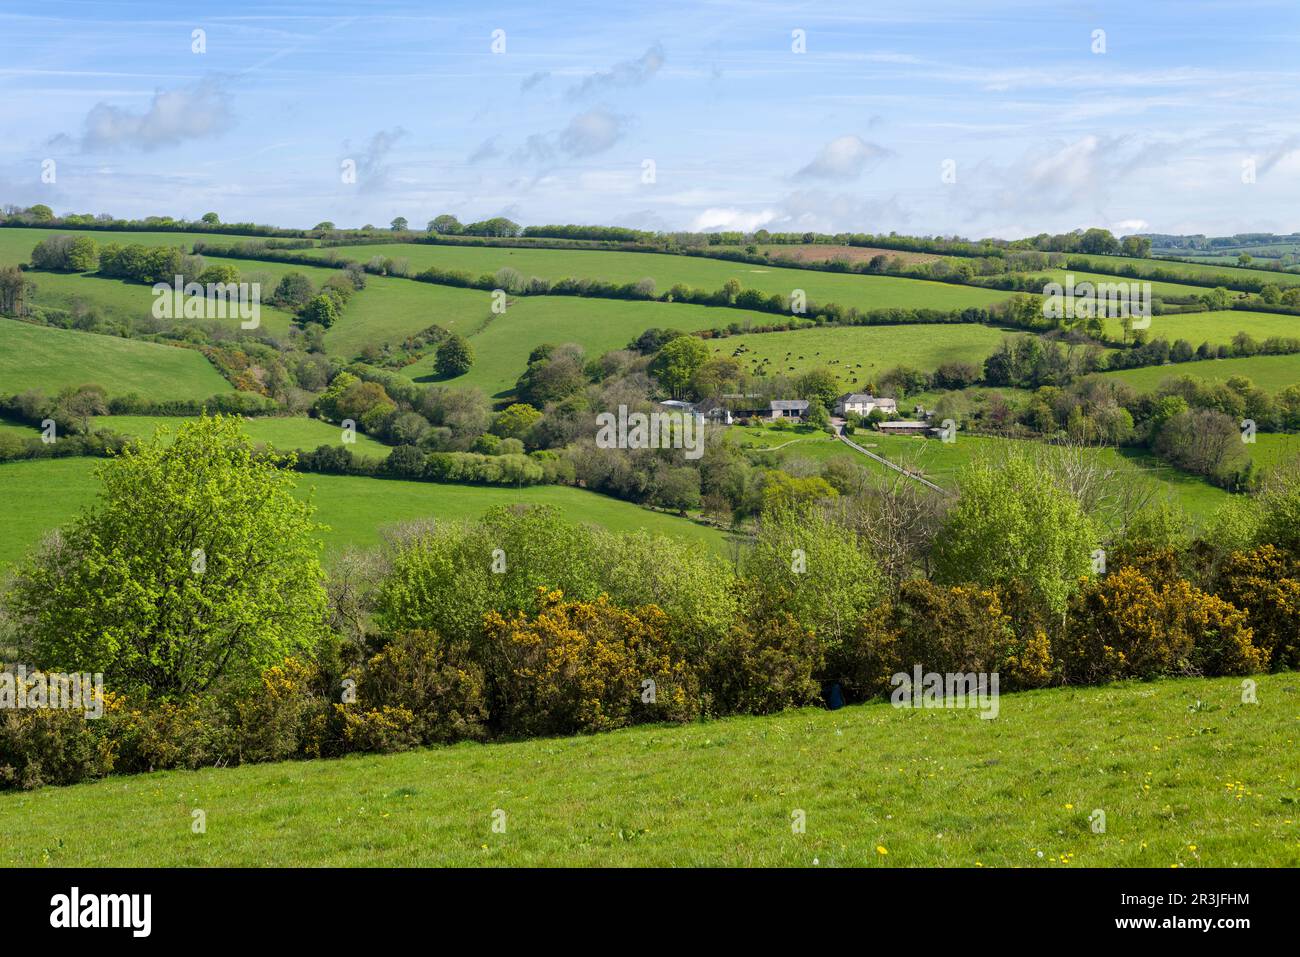 Rowes Farm près de Clatworthy dans les collines de Brendon, Somerset, Angleterre. Banque D'Images